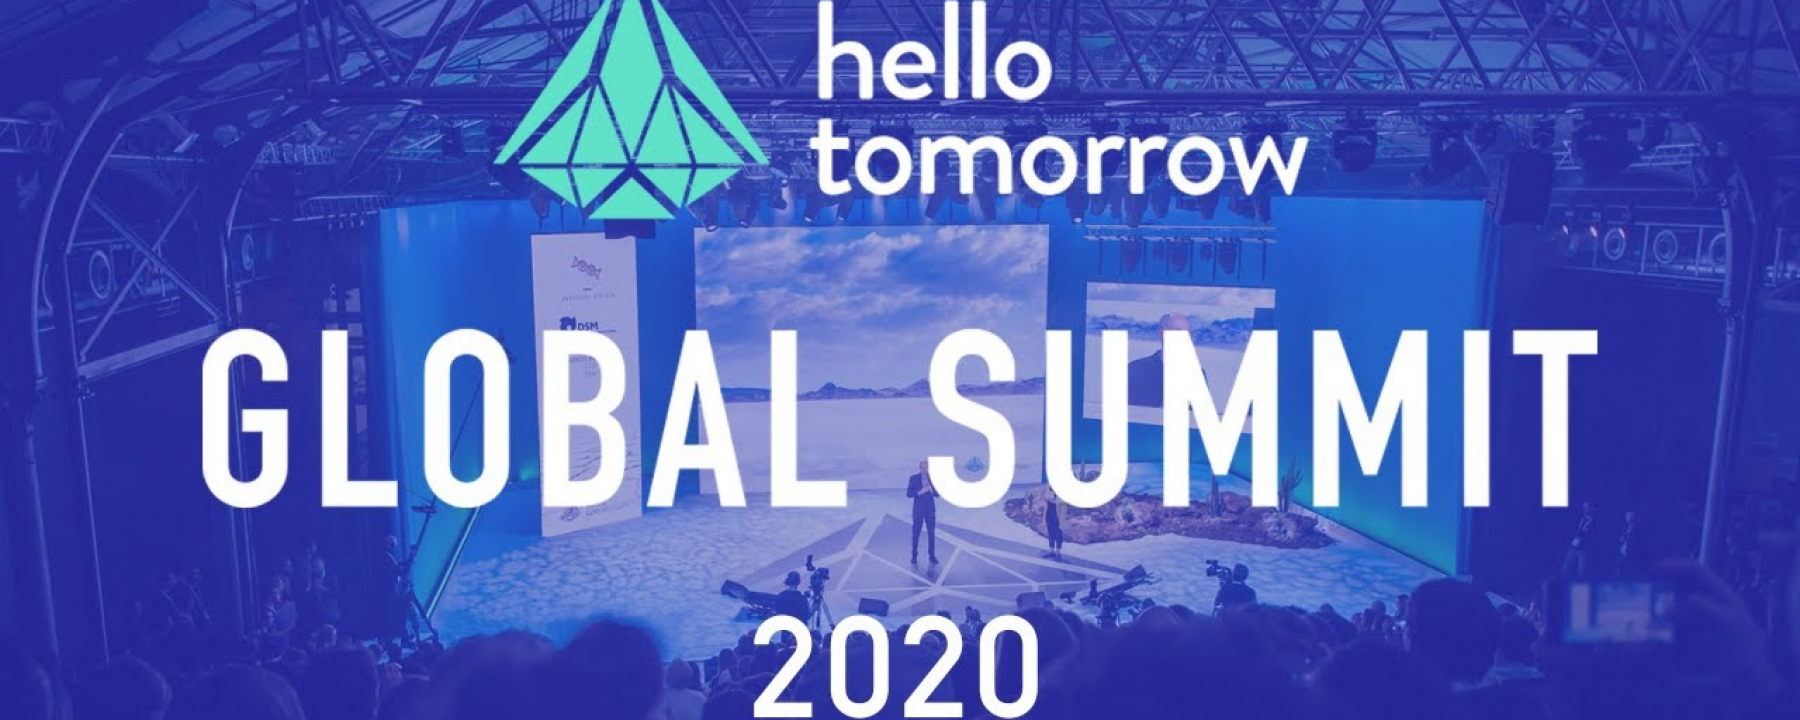 Salon Hello Tomorrow Global Summit 2020, au Centquatre Paris, événement sur la deep tech 